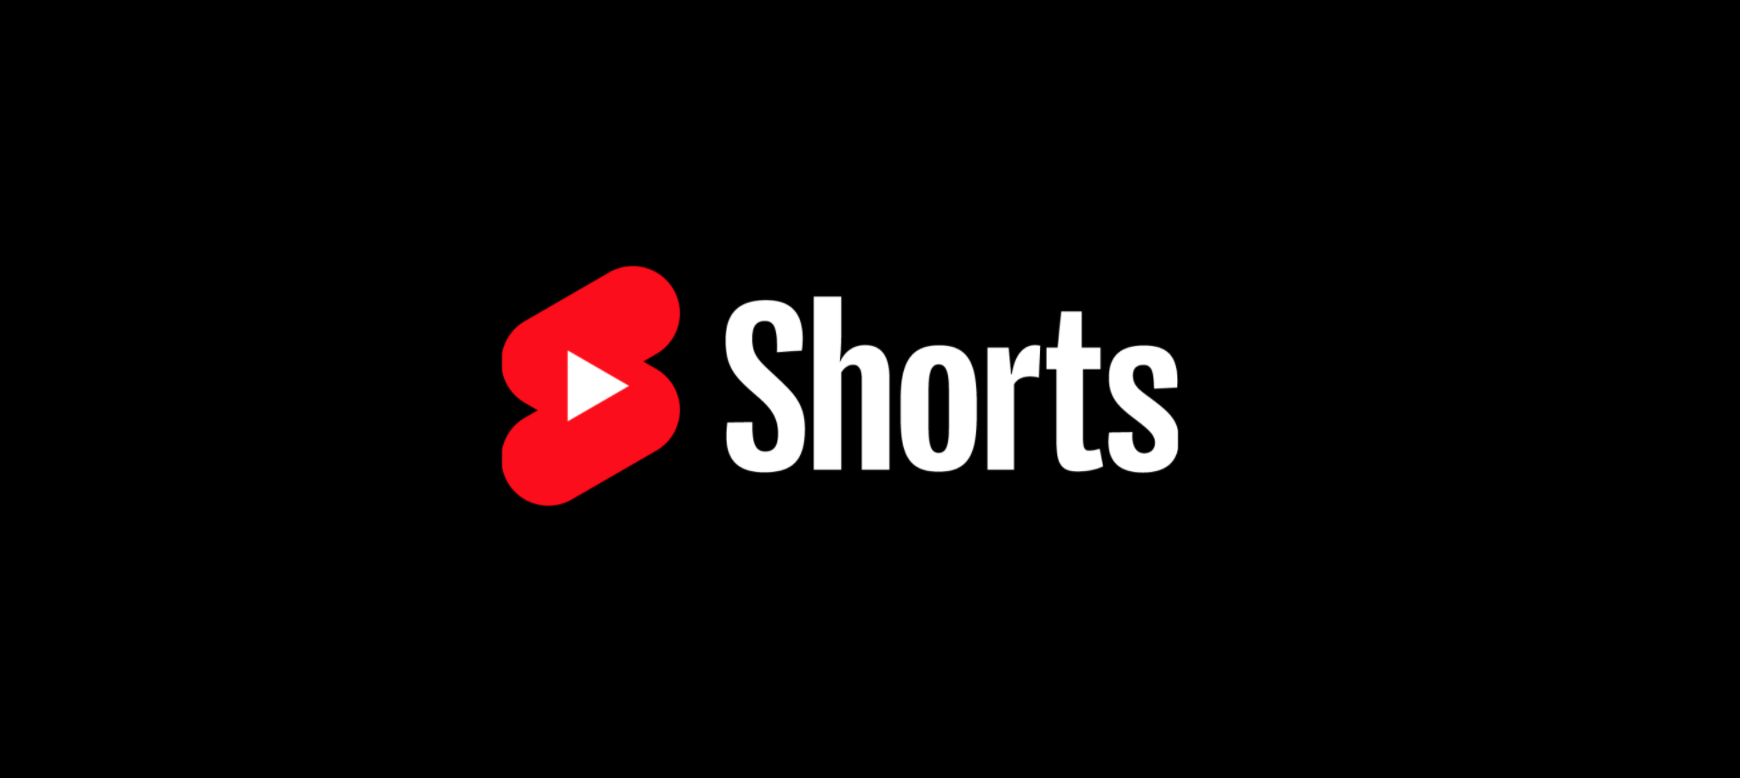 Youtube как сделать short